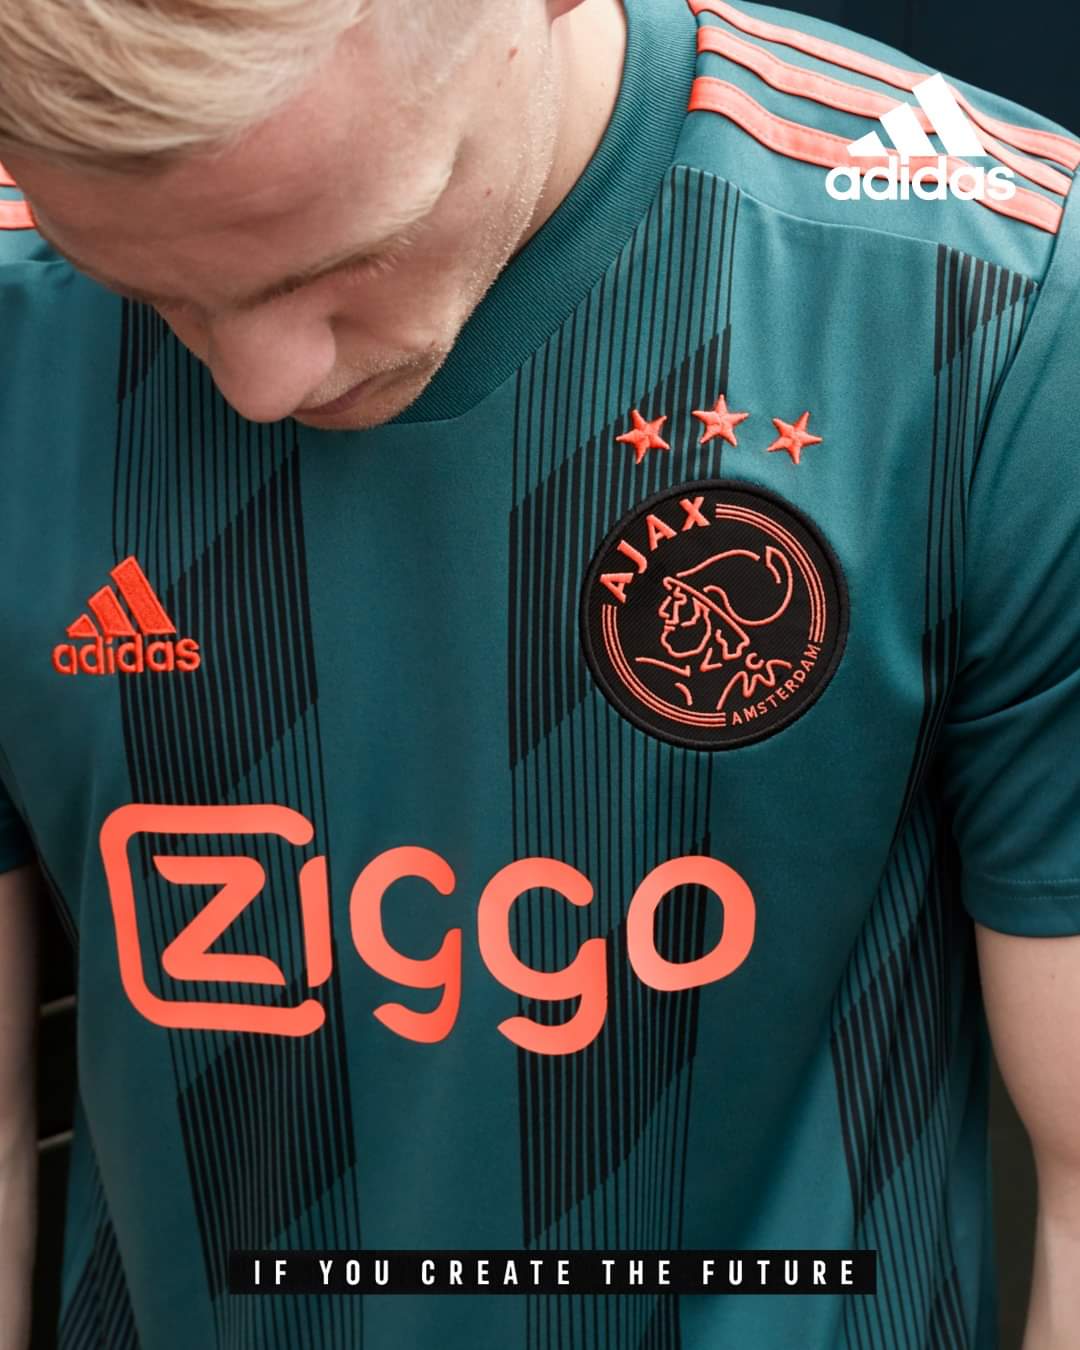 Ajax 2019-20 Adidas Away Kit | 19/20 Kits | Football shirt blog